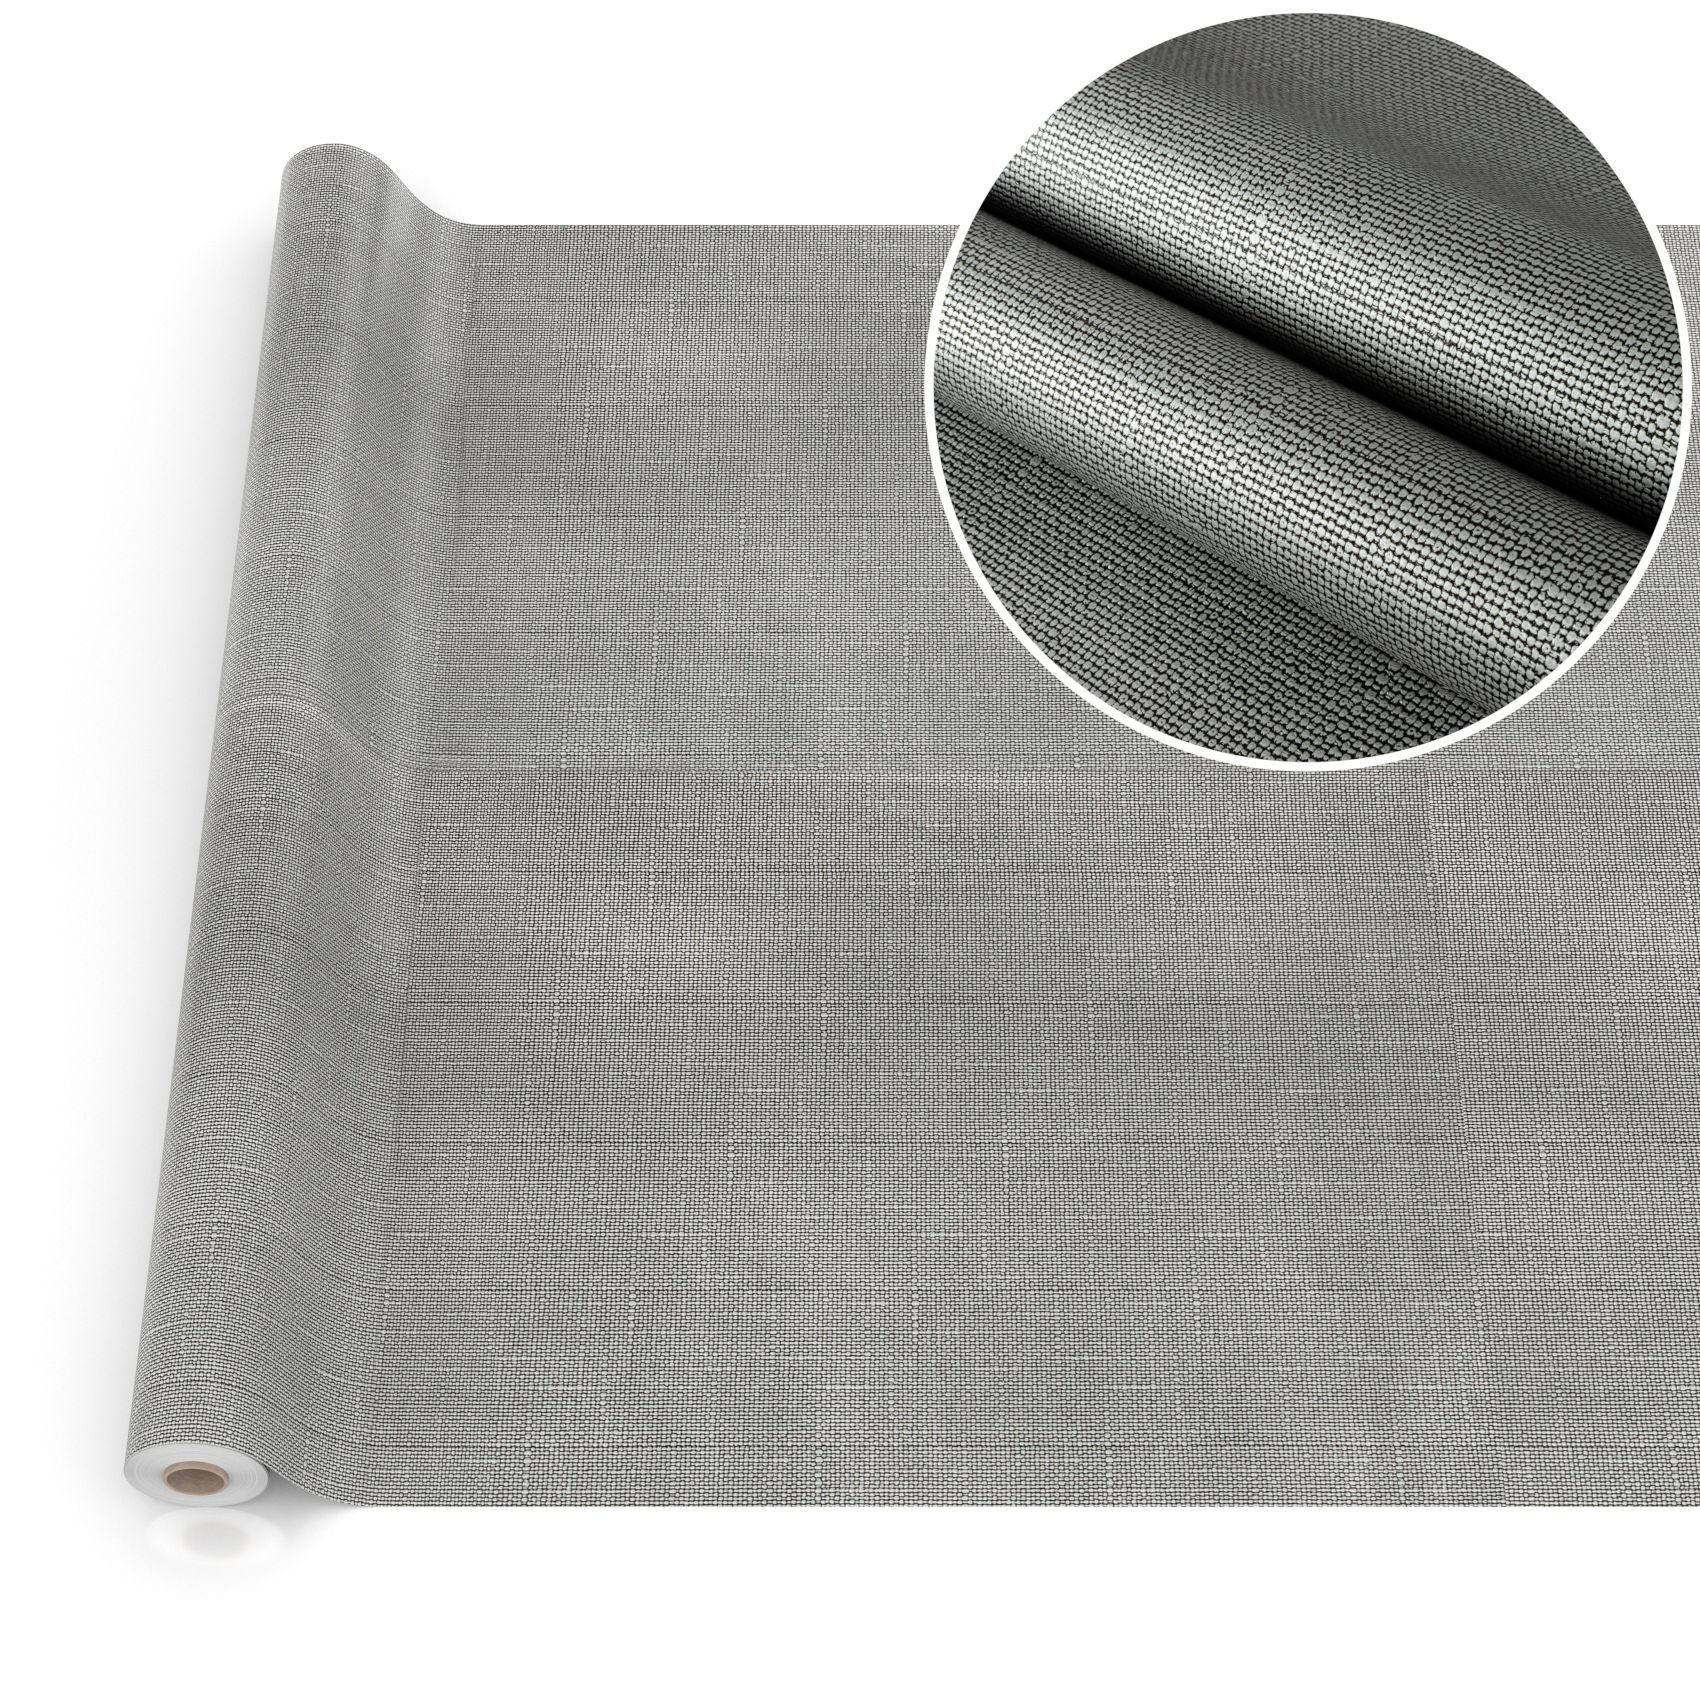 ANRO Tischdecke Tischdecke Wachstuch Premium Einfarbig Grau Robust Wasserabweisend, Prägung